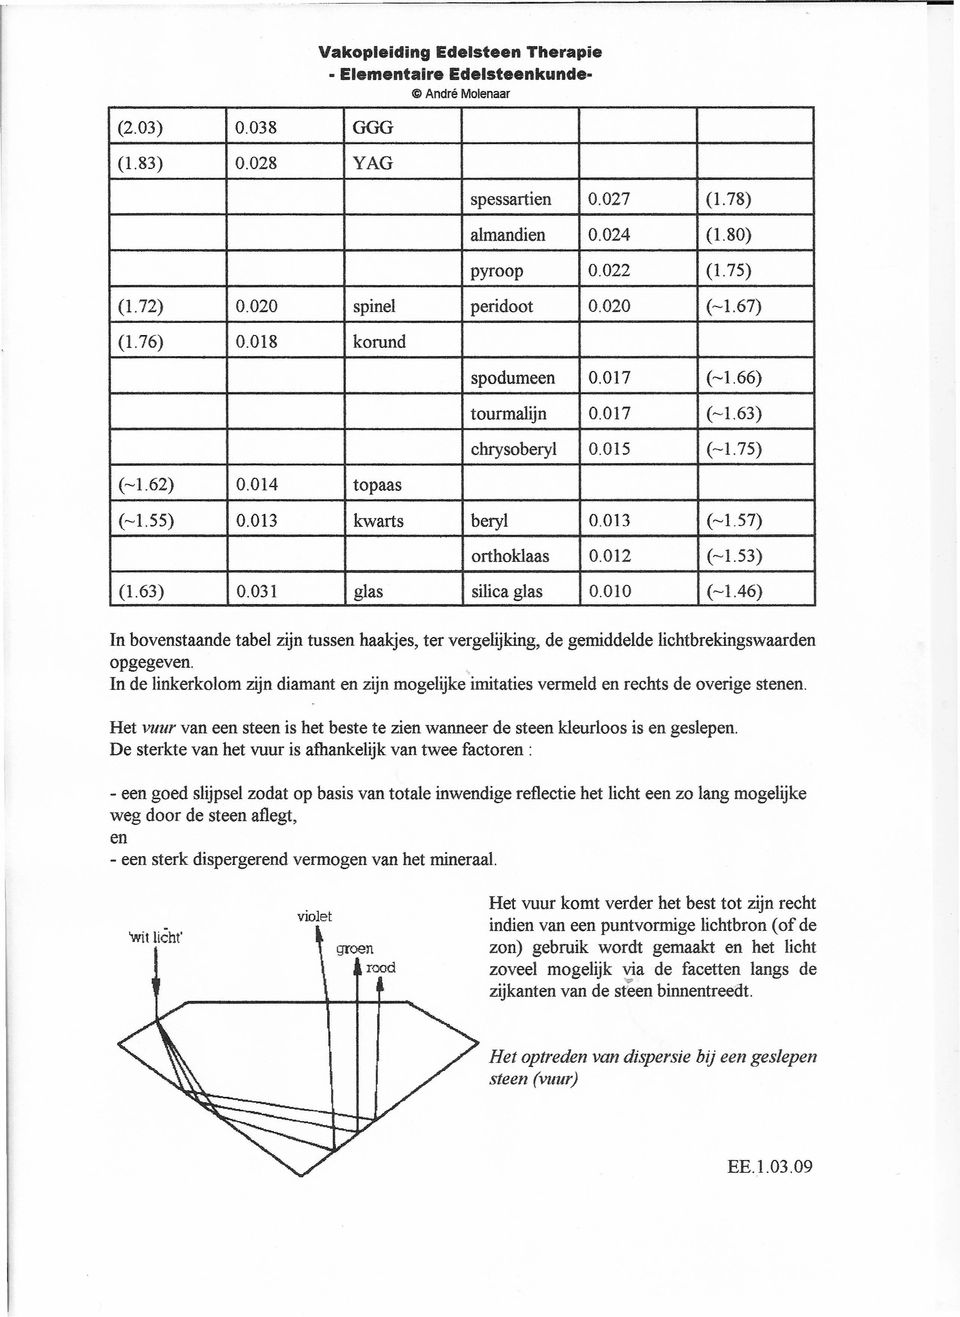 031 glas silica glas 0.010 (-1.46) n bovenstaande tabel zijn tussen haakjes, ter vergelijking, de gemiddelde lichtbrekingswaarden opgegeven.